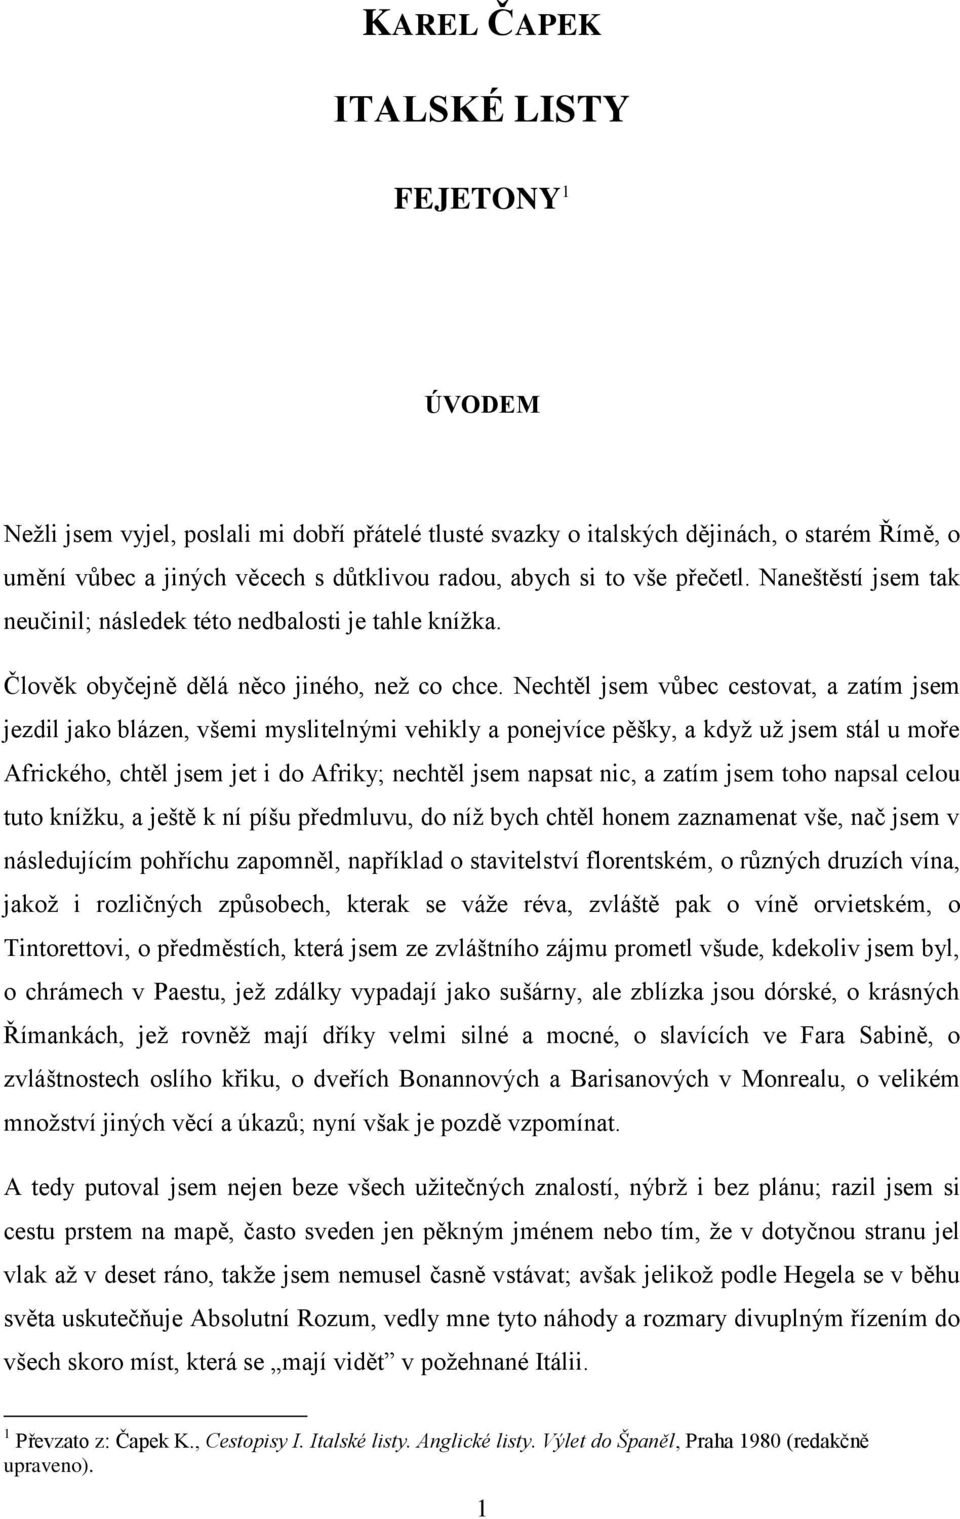 KAREL ČAPEK ITALSKÉ LISTY FEJETONY 1 ÚVODEM - PDF Stažení zdarma